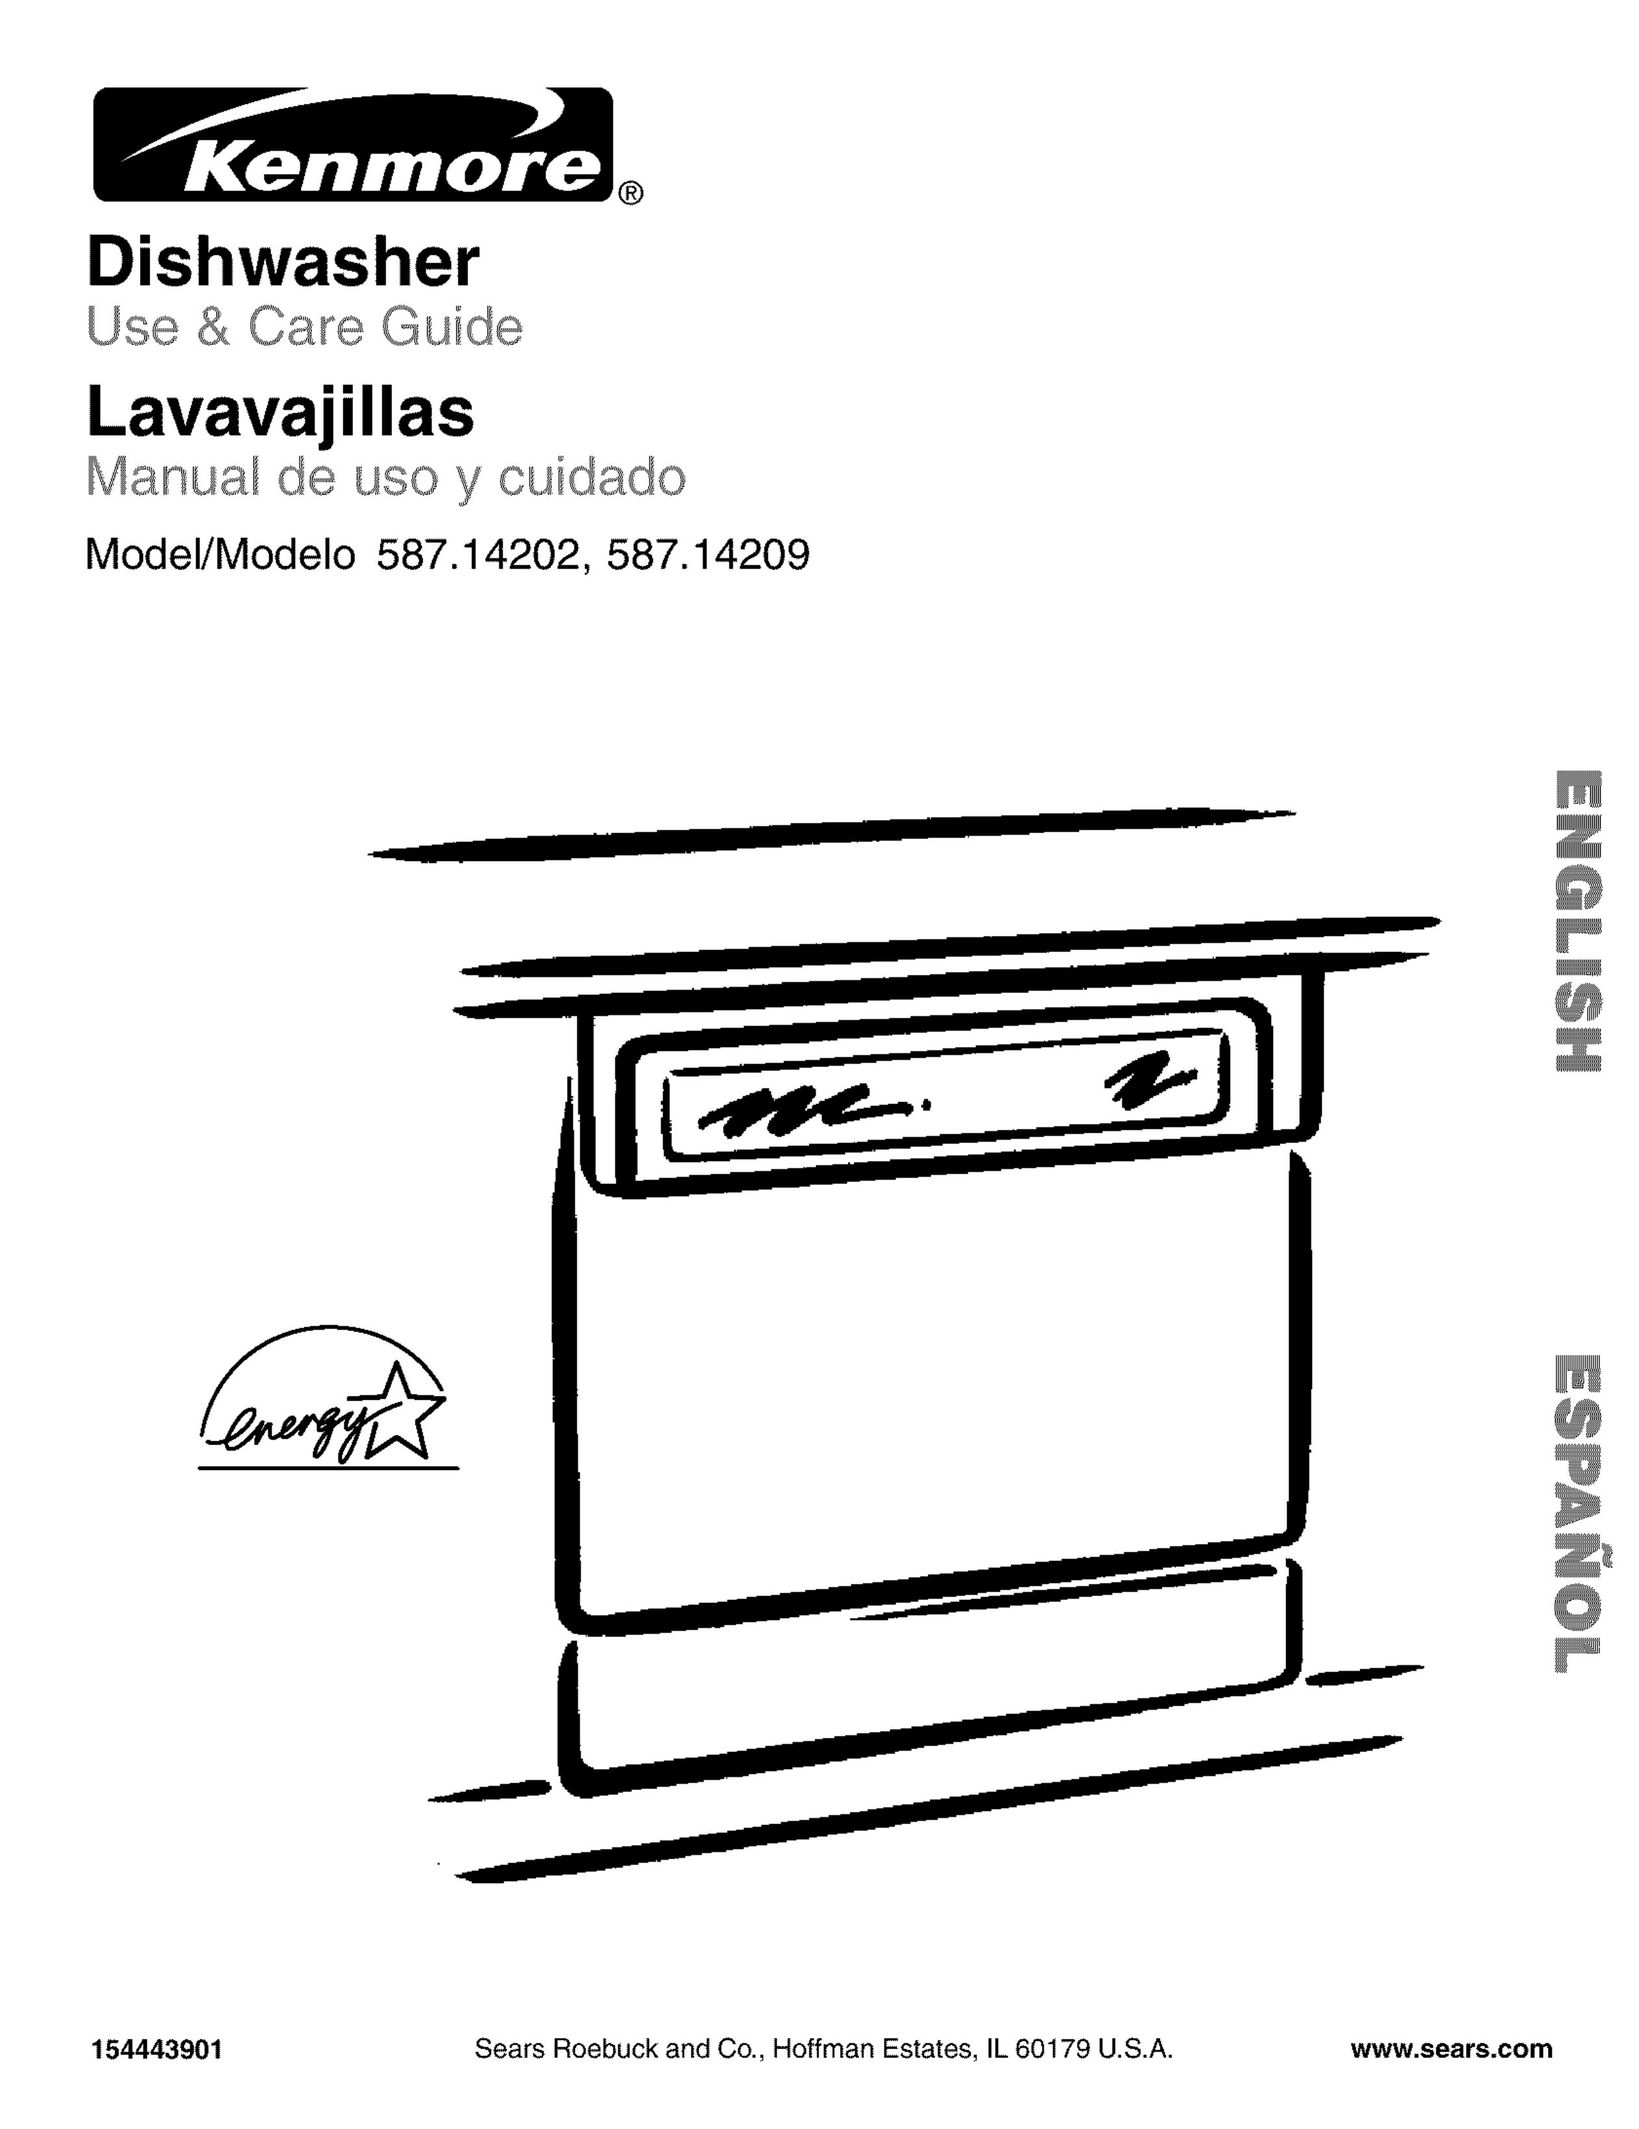 Kenmore 587.14202 Dishwasher User Manual